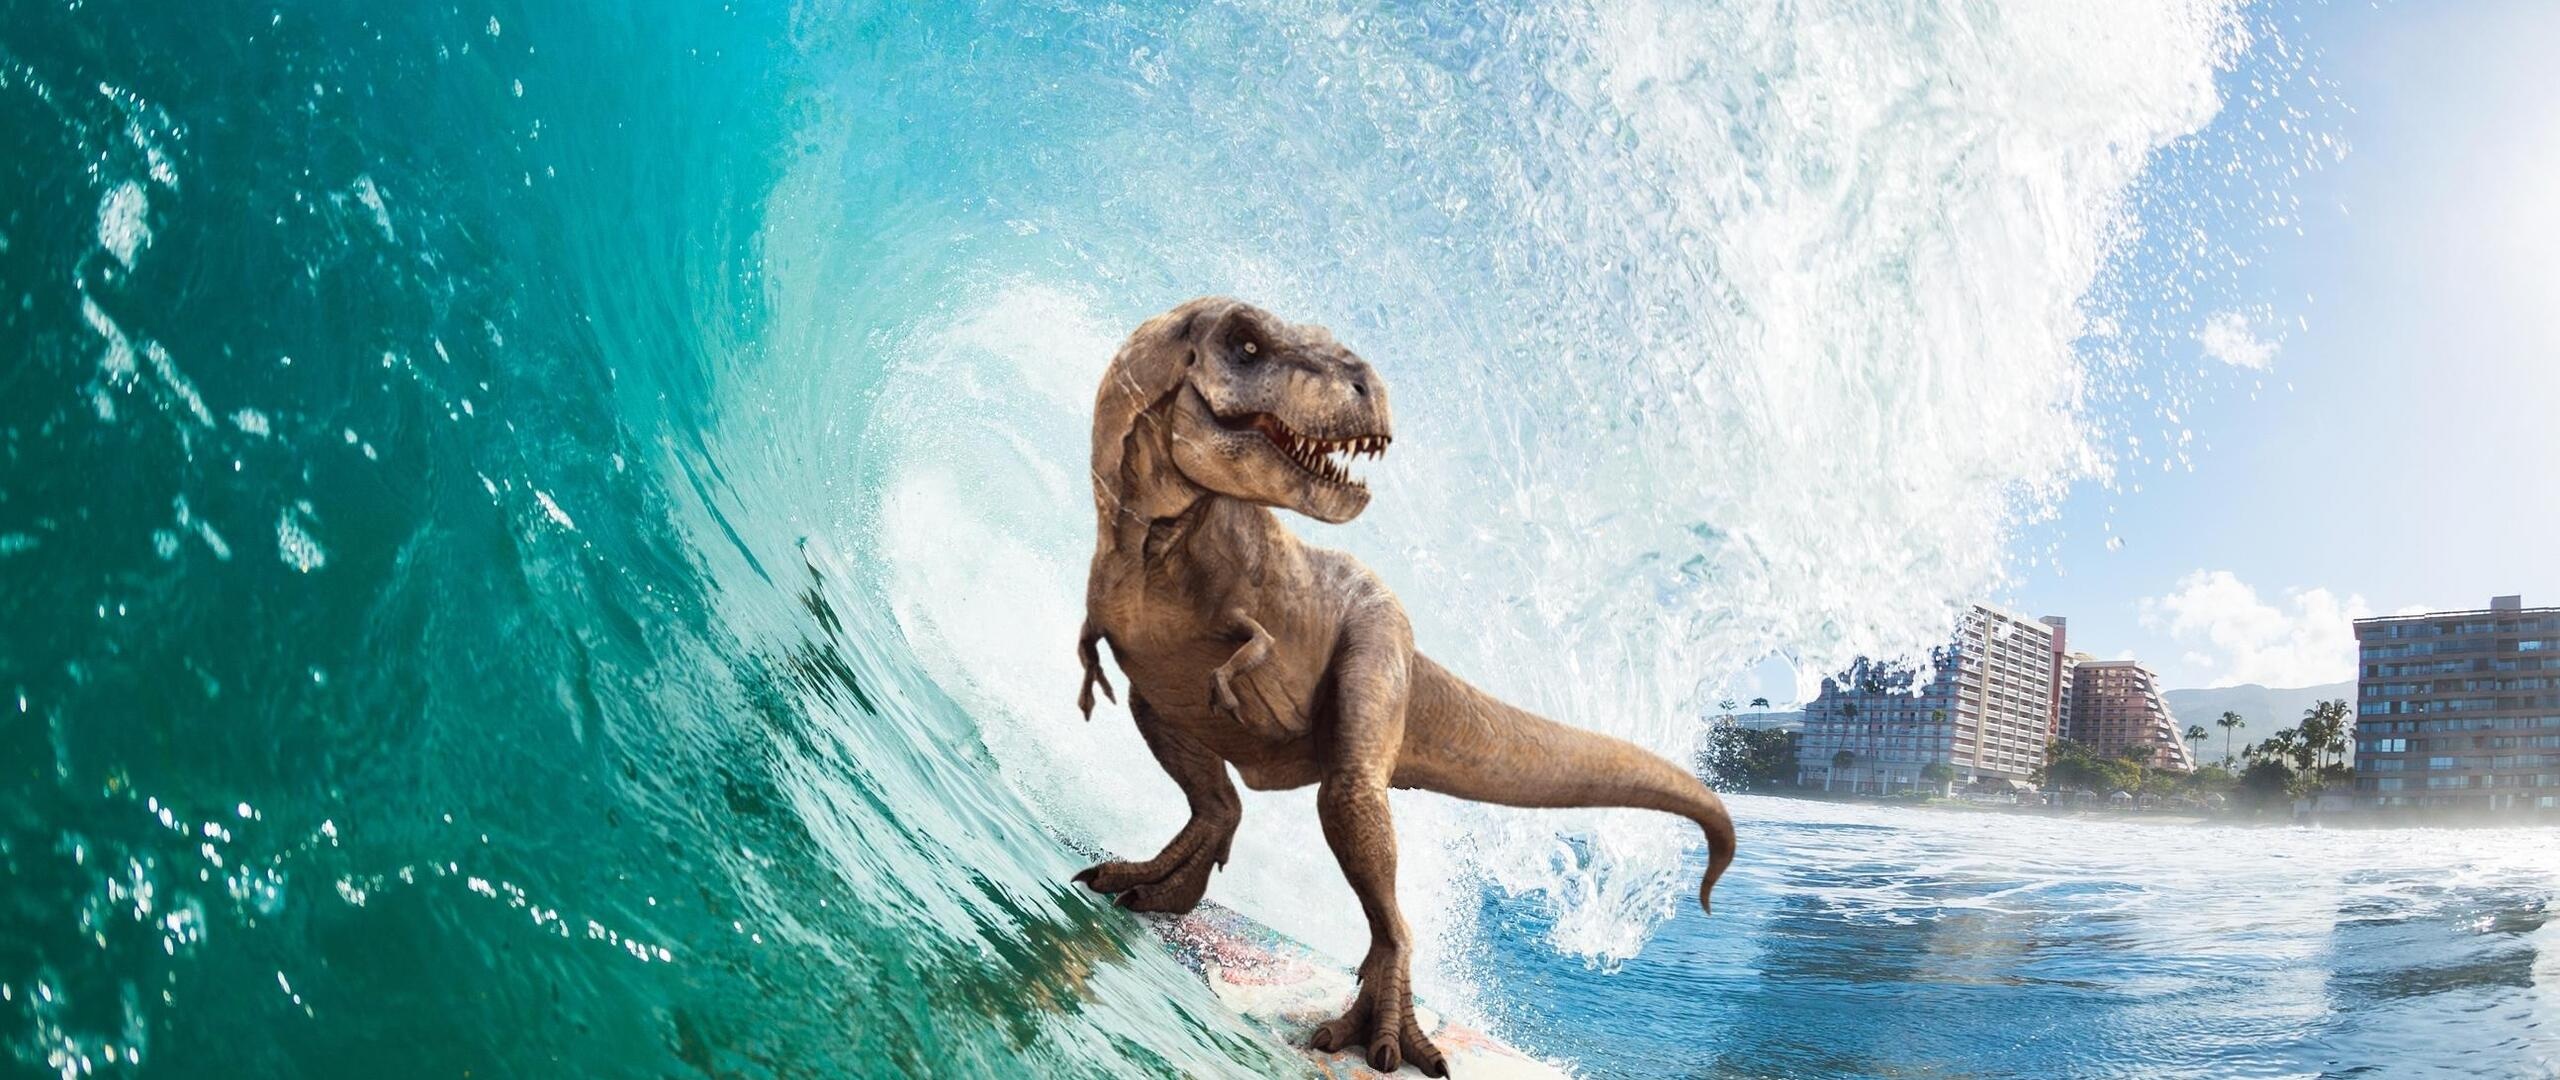 Surfing t-rex, High definition wallpaper, 4K display, Playful design, 2560x1080 Dual Screen Desktop